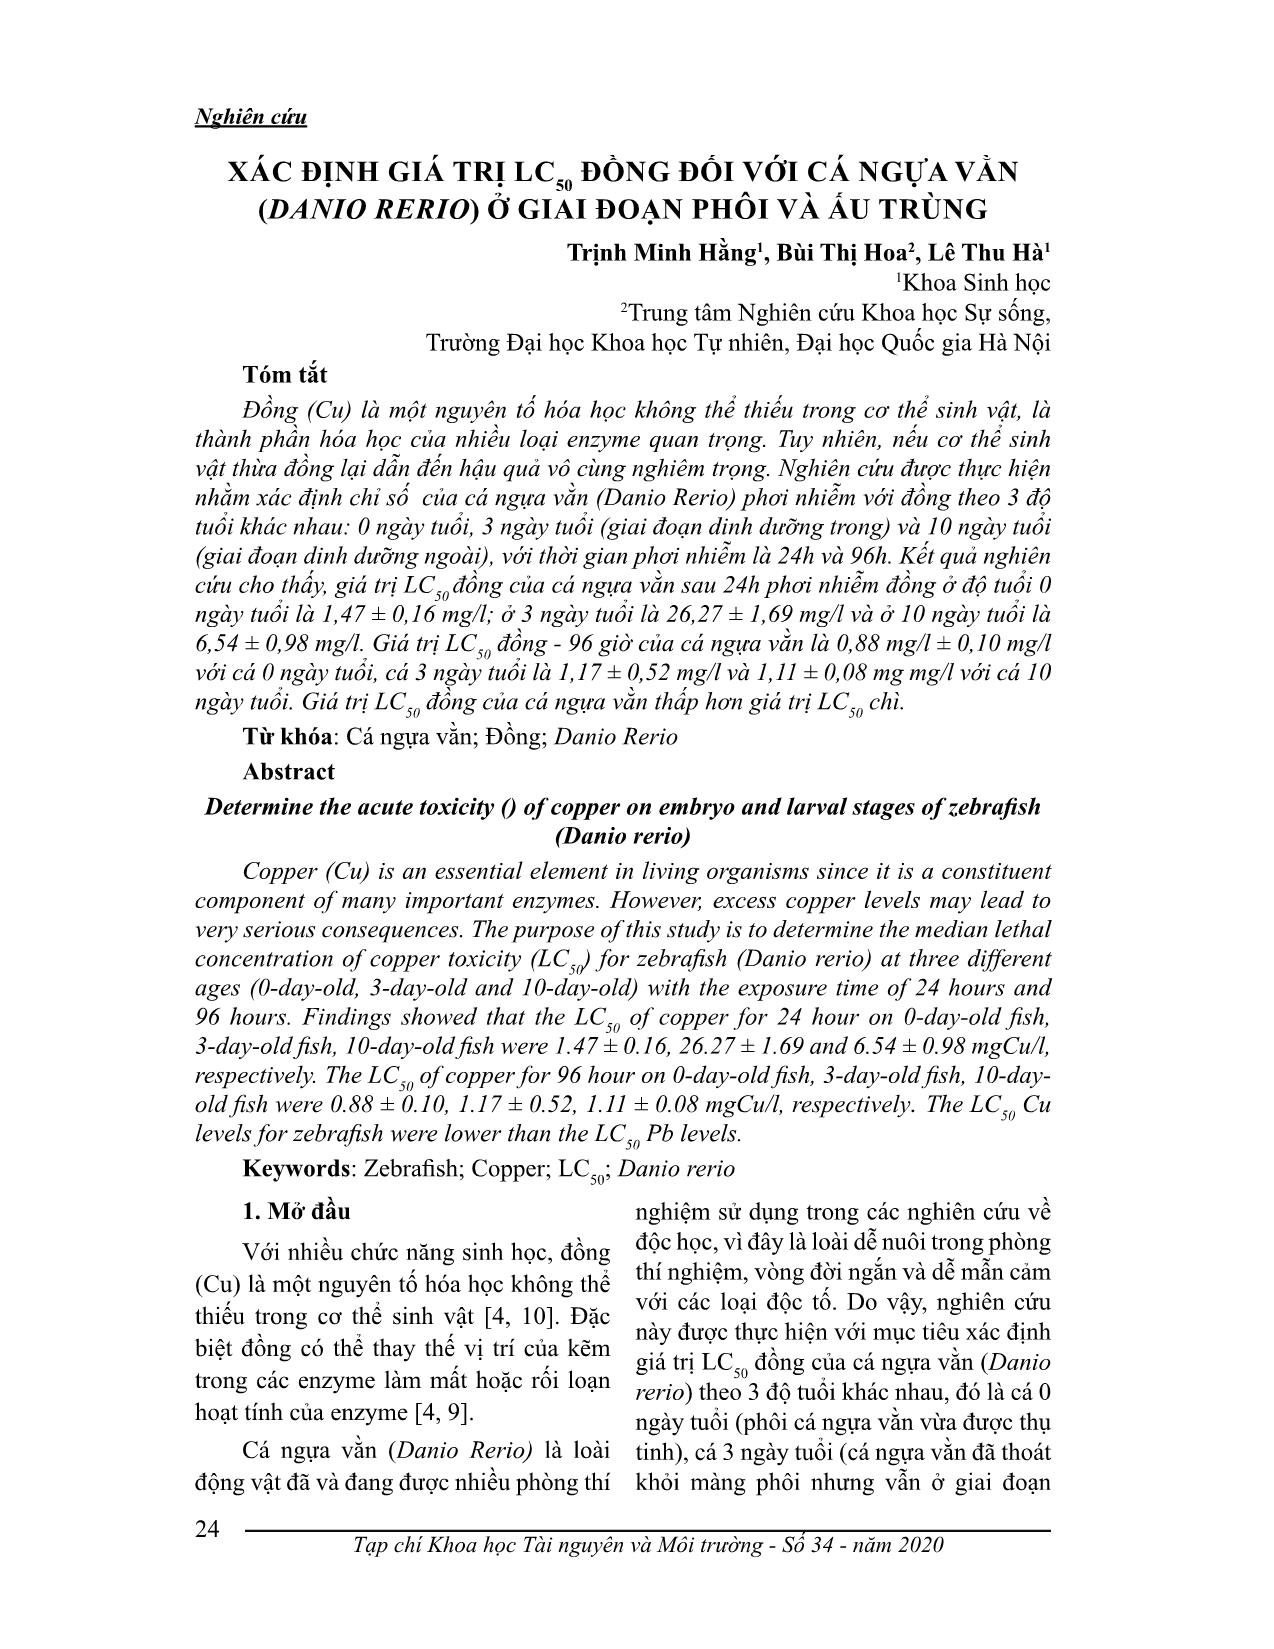 Xác định giá trị LC50 đòng đối với cá ngựa vằn (danio rerio) ở giai đoạn phôi và ấu trùng trang 1